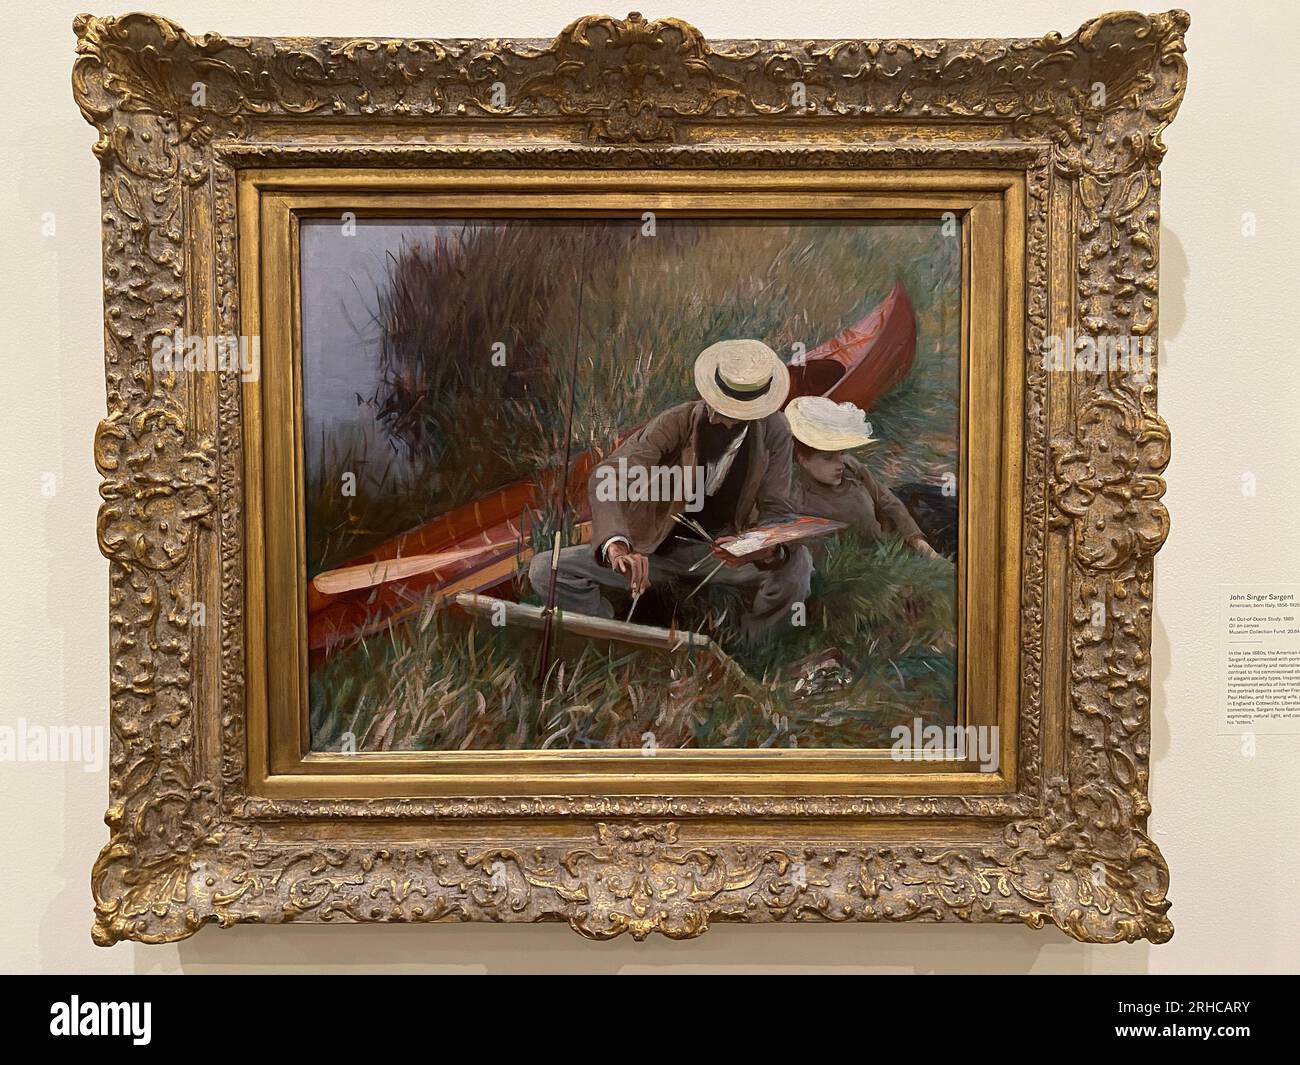 John Singer Sargent américain, né en Italie, 1856-1925 'an Out-of-Door Study', 1889, huile sur toile. Brooklyn Museum, New York Banque D'Images